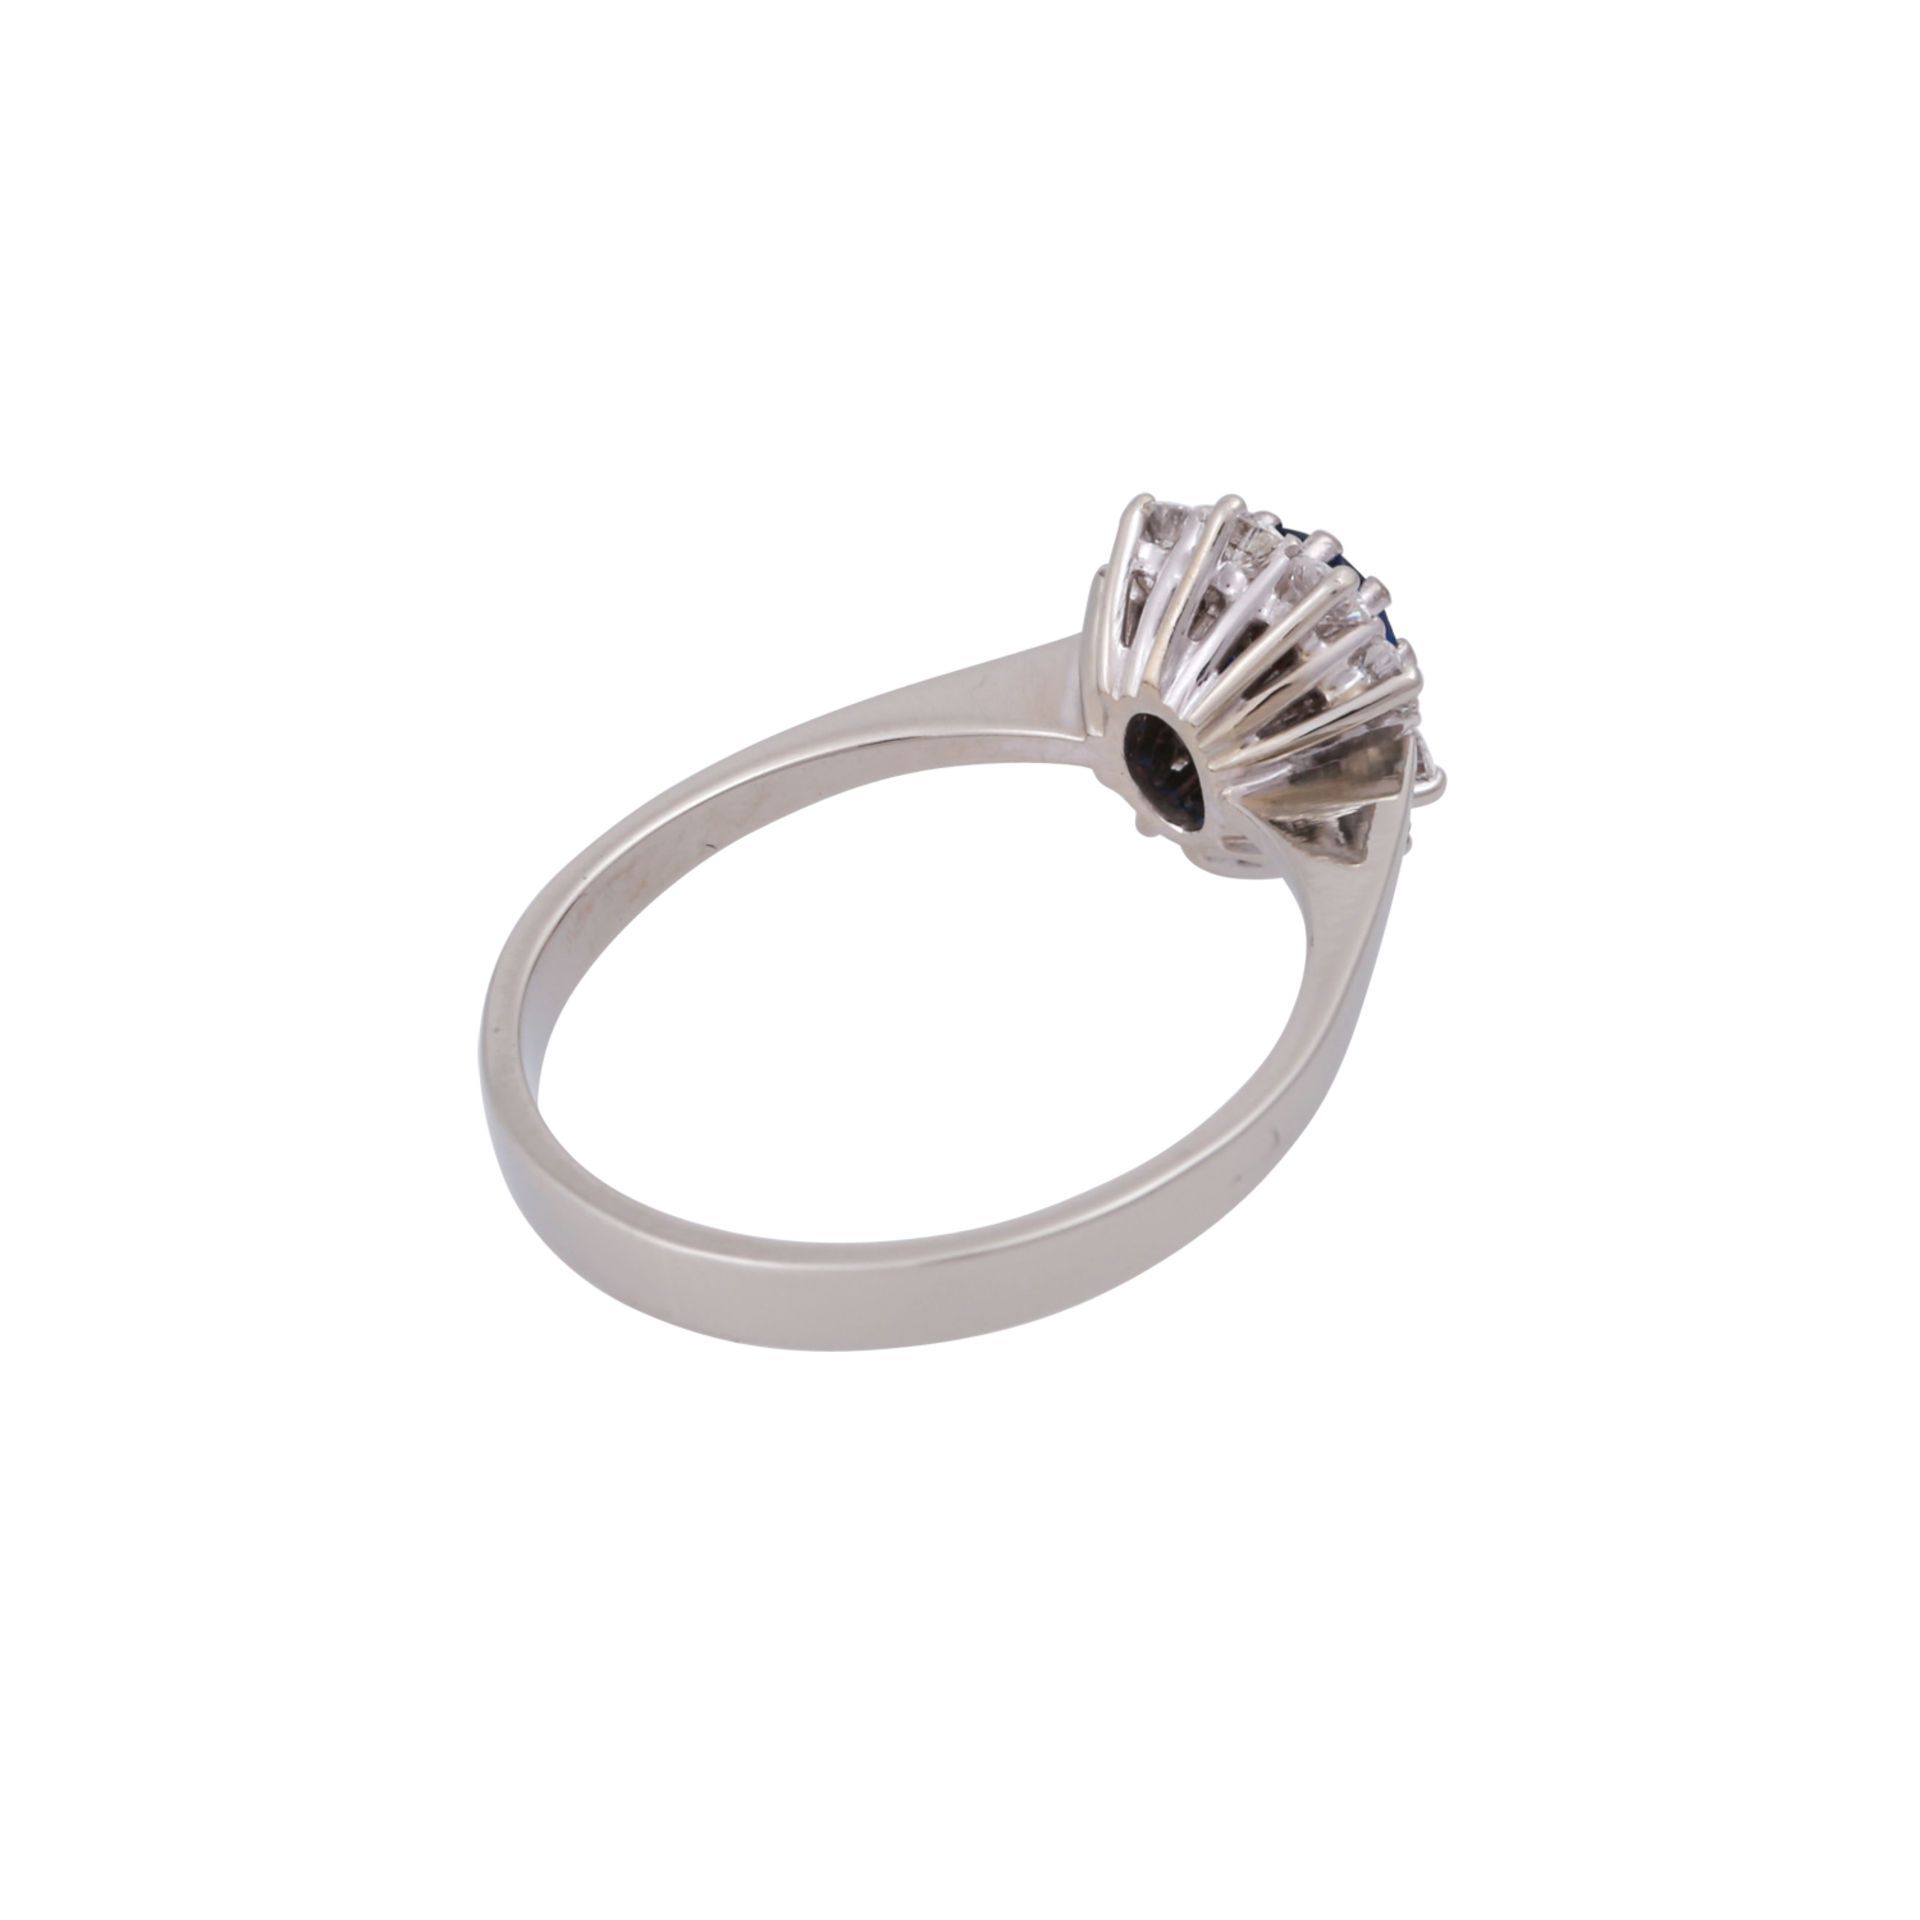 Ring mit Saphir und Brillantenvon zus. ca. 0,4 ct, gute Farbe u. Reinheit, Saphir ca. 1 ct, WG - Bild 3 aus 4